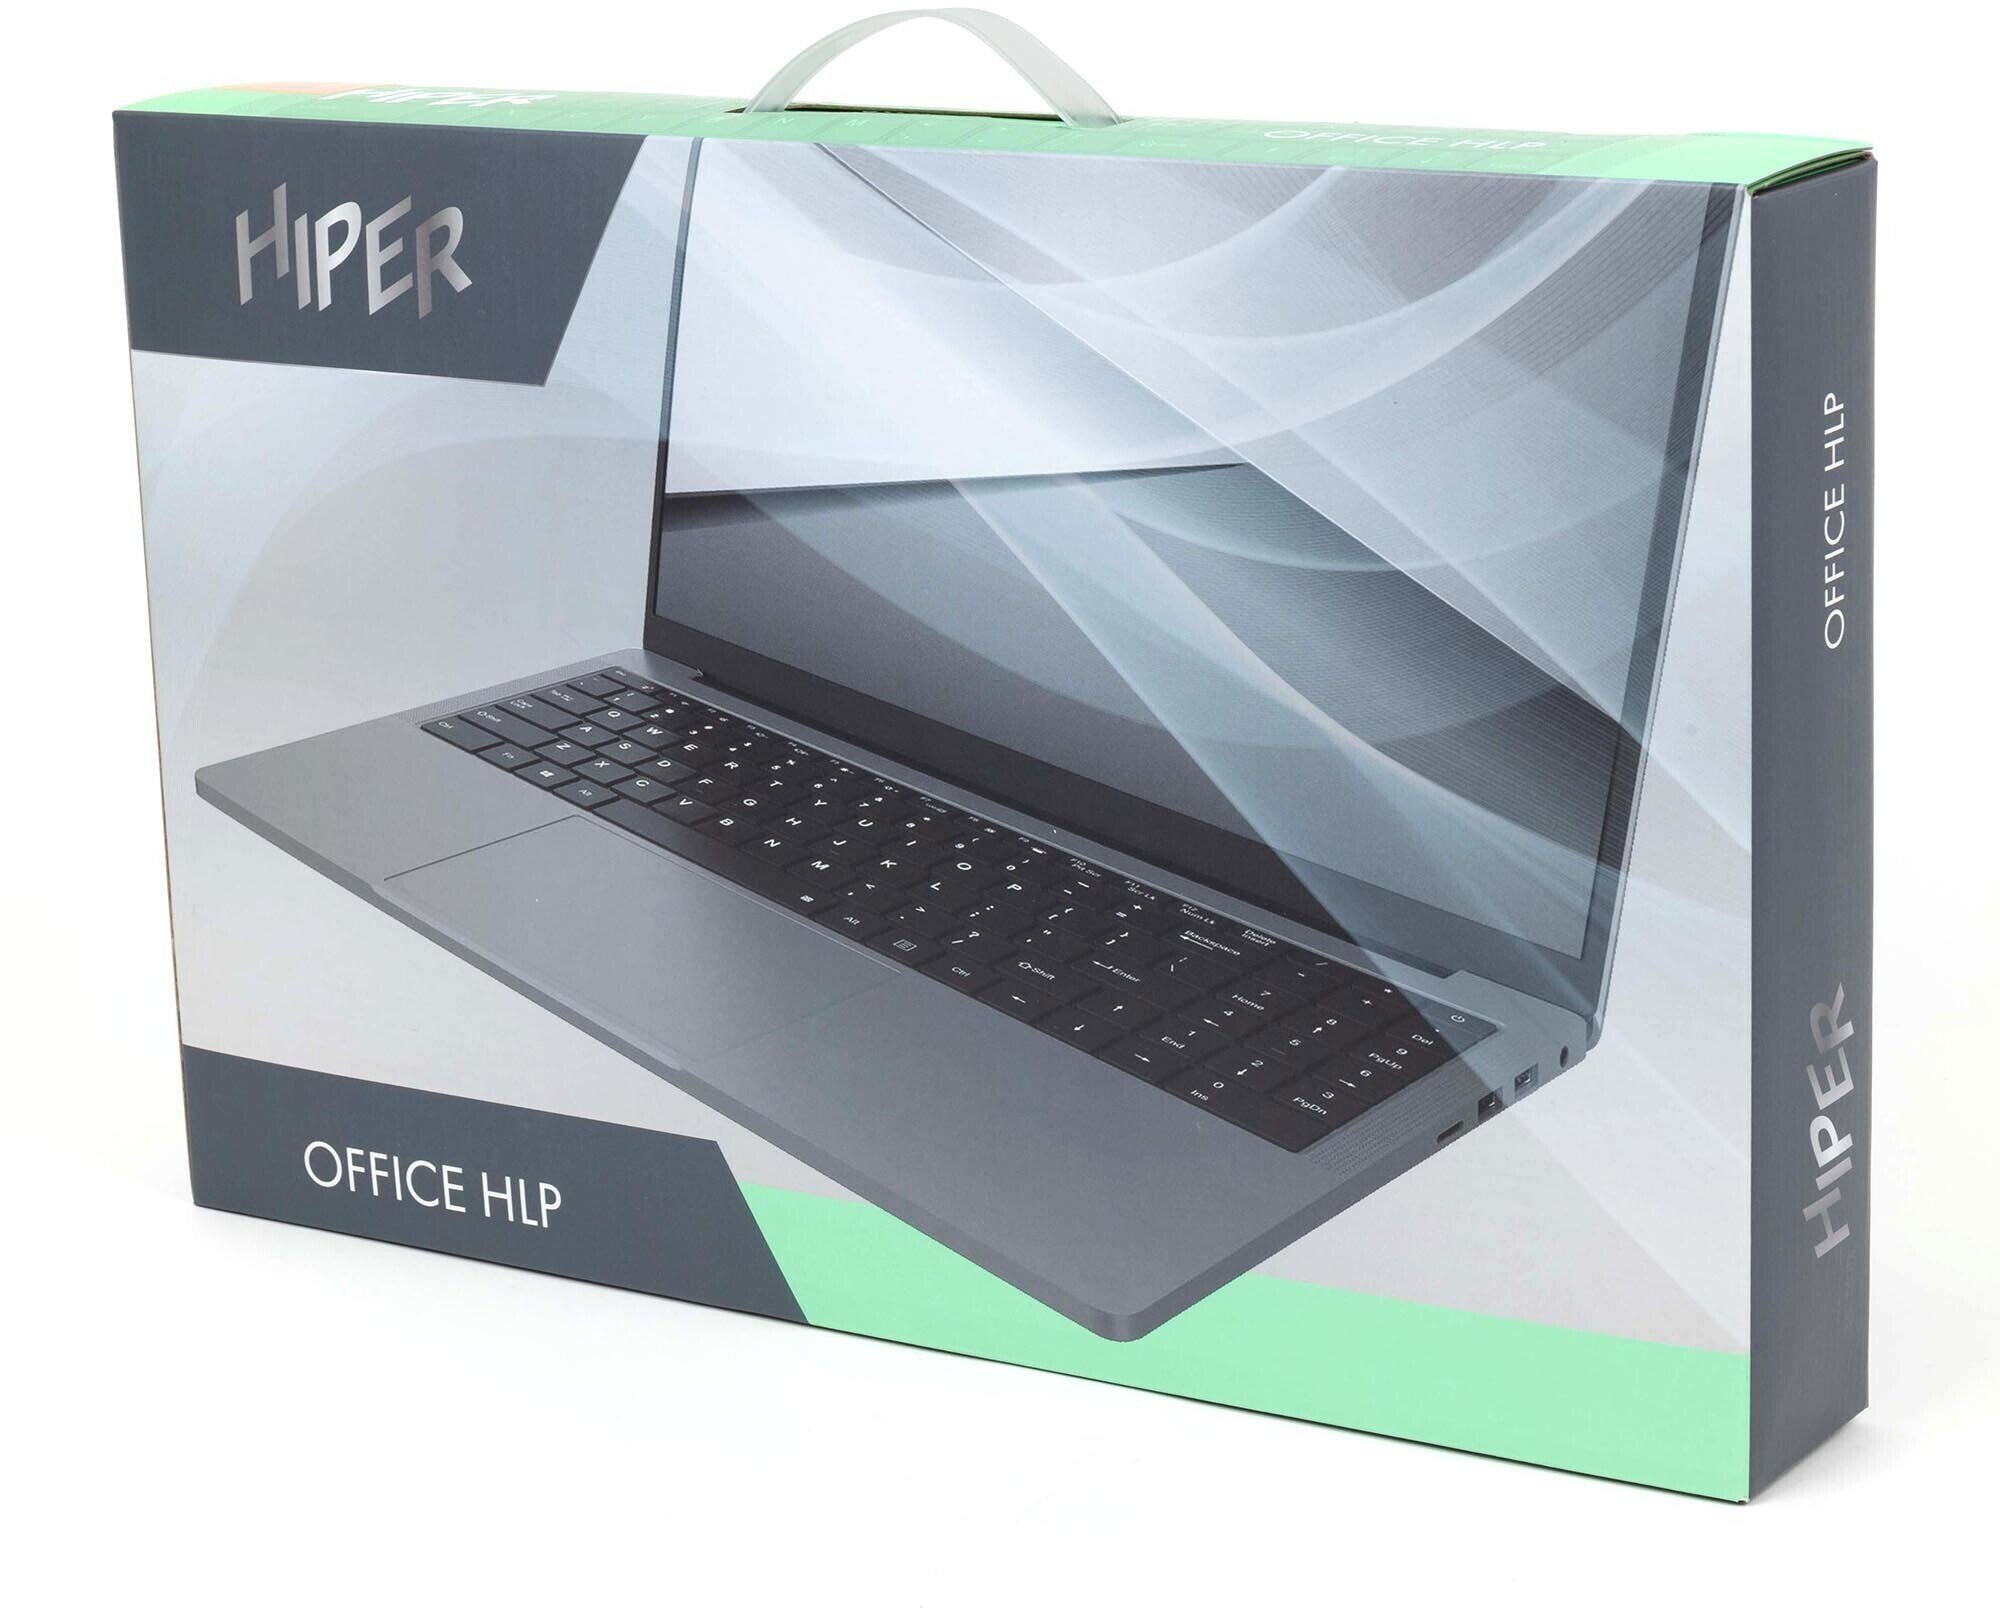 Ноутбук HIPER Office H1574O582DM 156" IPS Intel Core i5 1235U 13ГГц 10-ядерный 8ГБ 256ГБ SSD Intel UHD Graphics интегрированное Fr